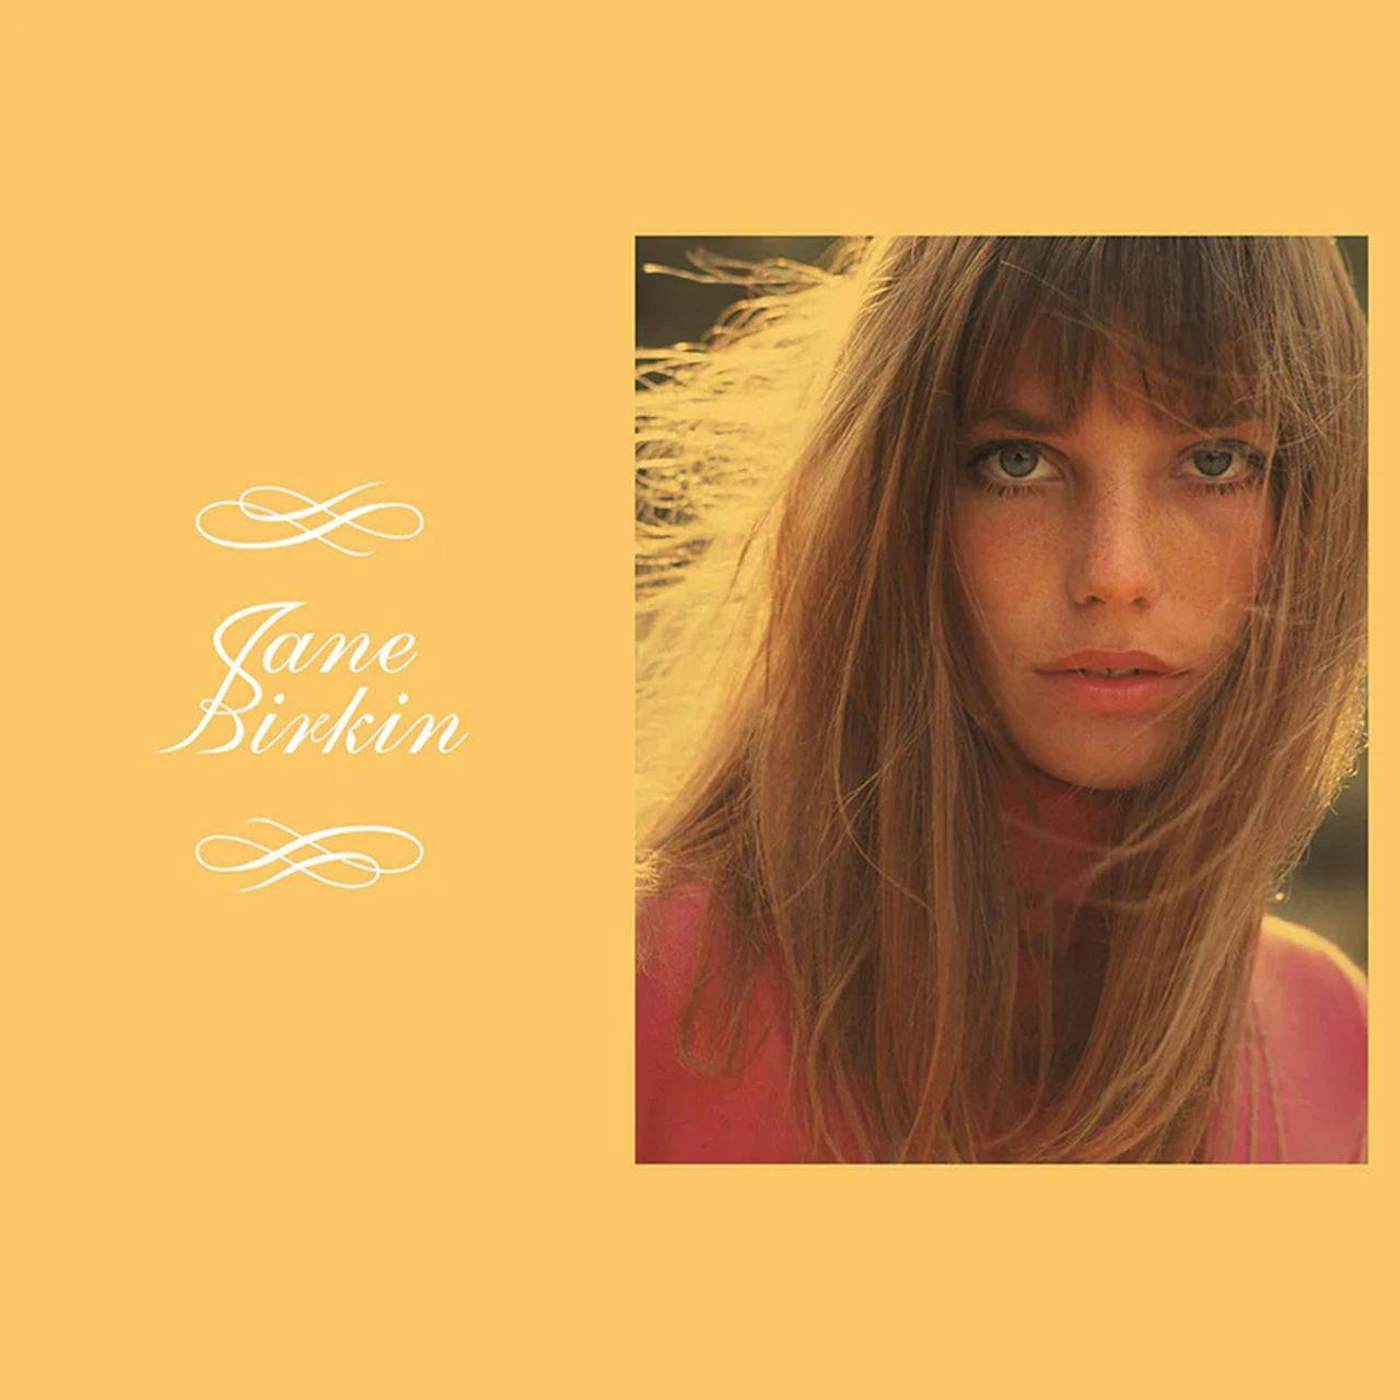 Jane Birkin BEST SELECTION CD